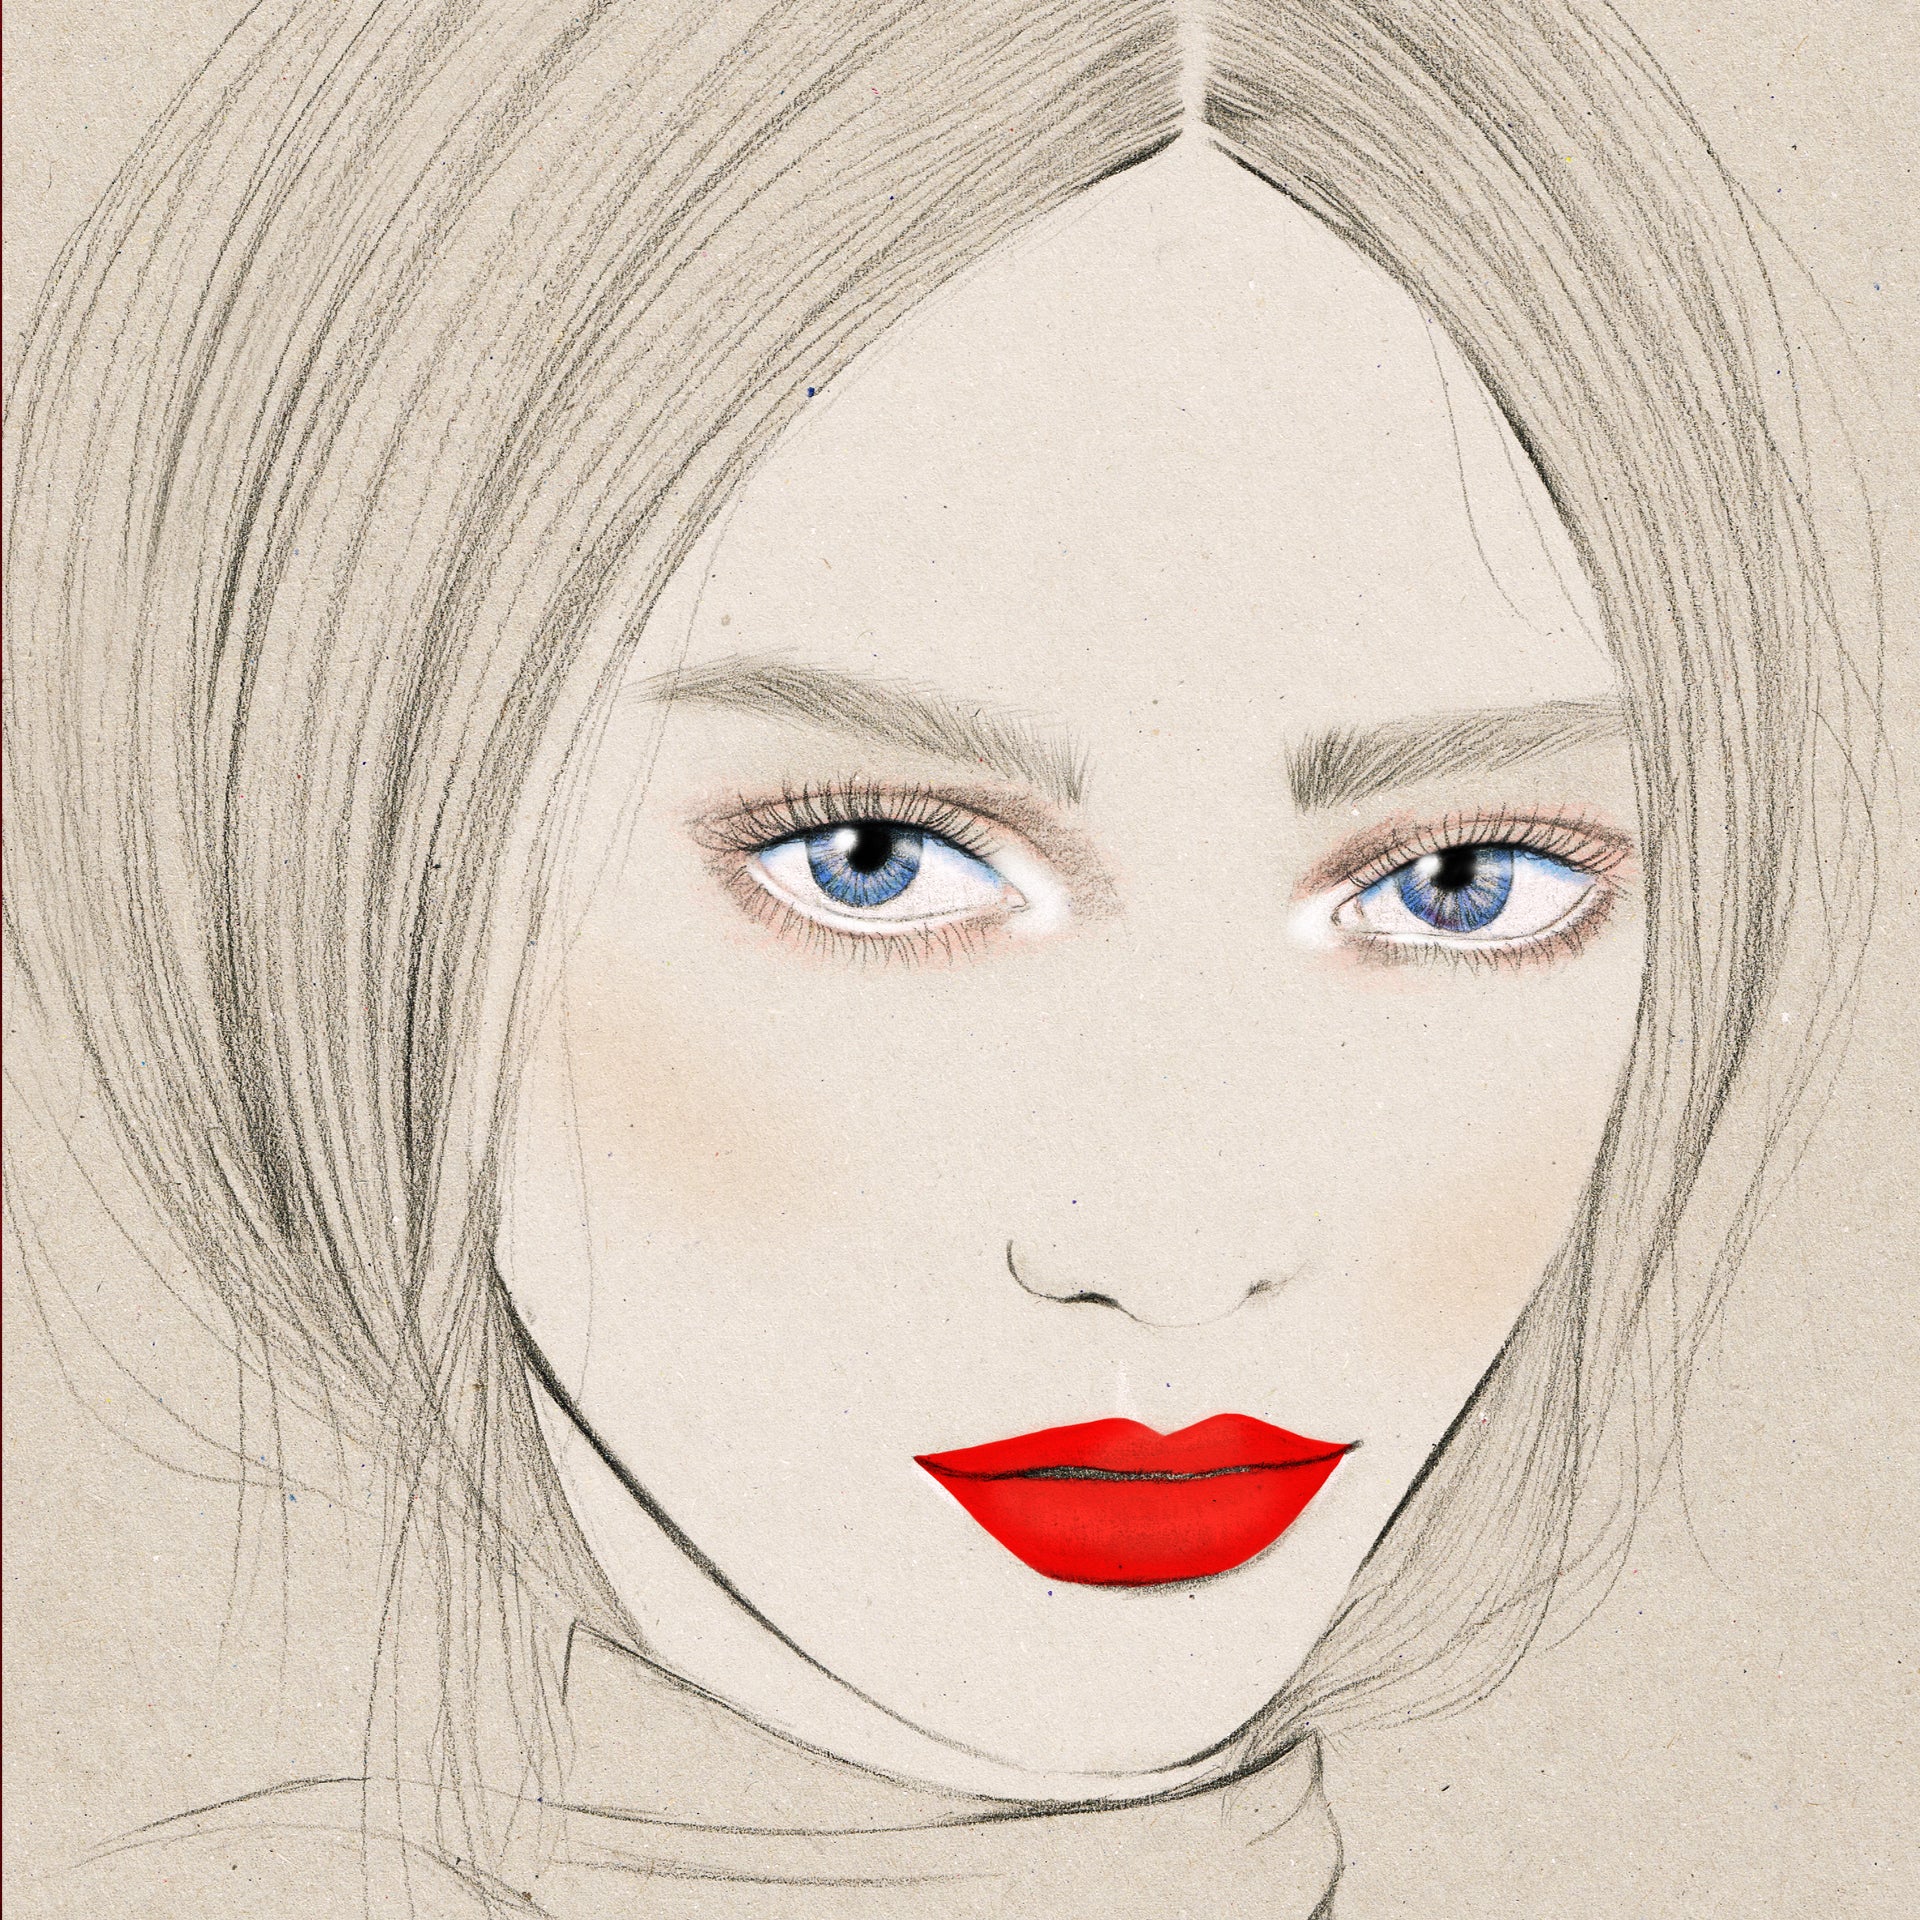 MAC Cosmetics New Zealand Fashion Week makeup fashion illustration by Melbourne based illustrator Kelly Thompson